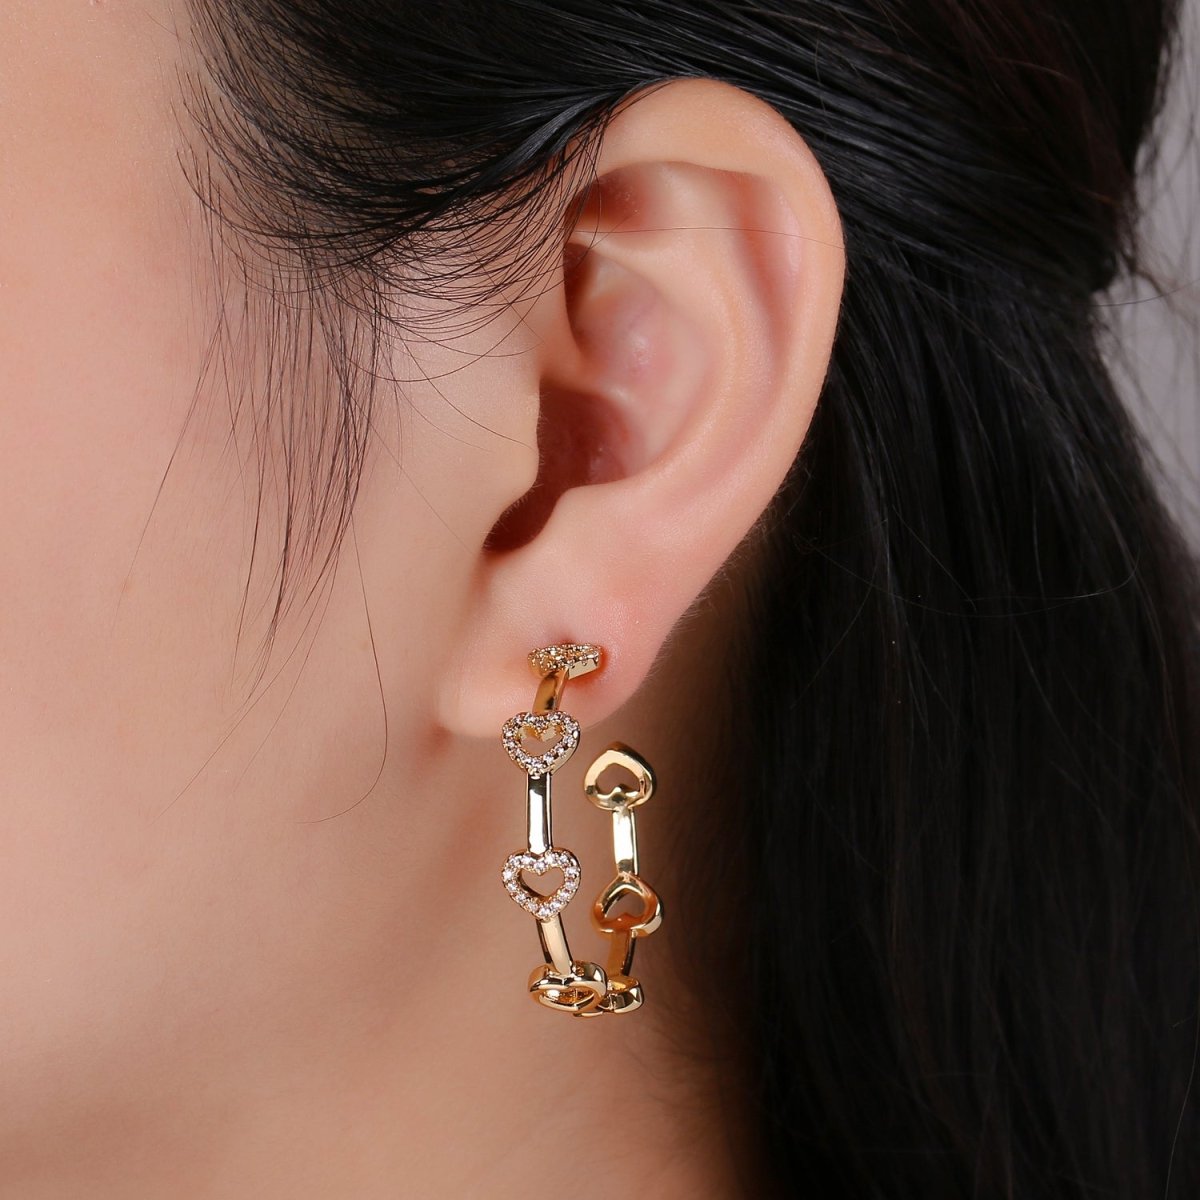 24k Gold Earrings, Hoop Earrings, Heart Hoop, CZ Circle Earring, Gift for Her, Earrings for Women, Everyday Wear Earring Q-535 - DLUXCA